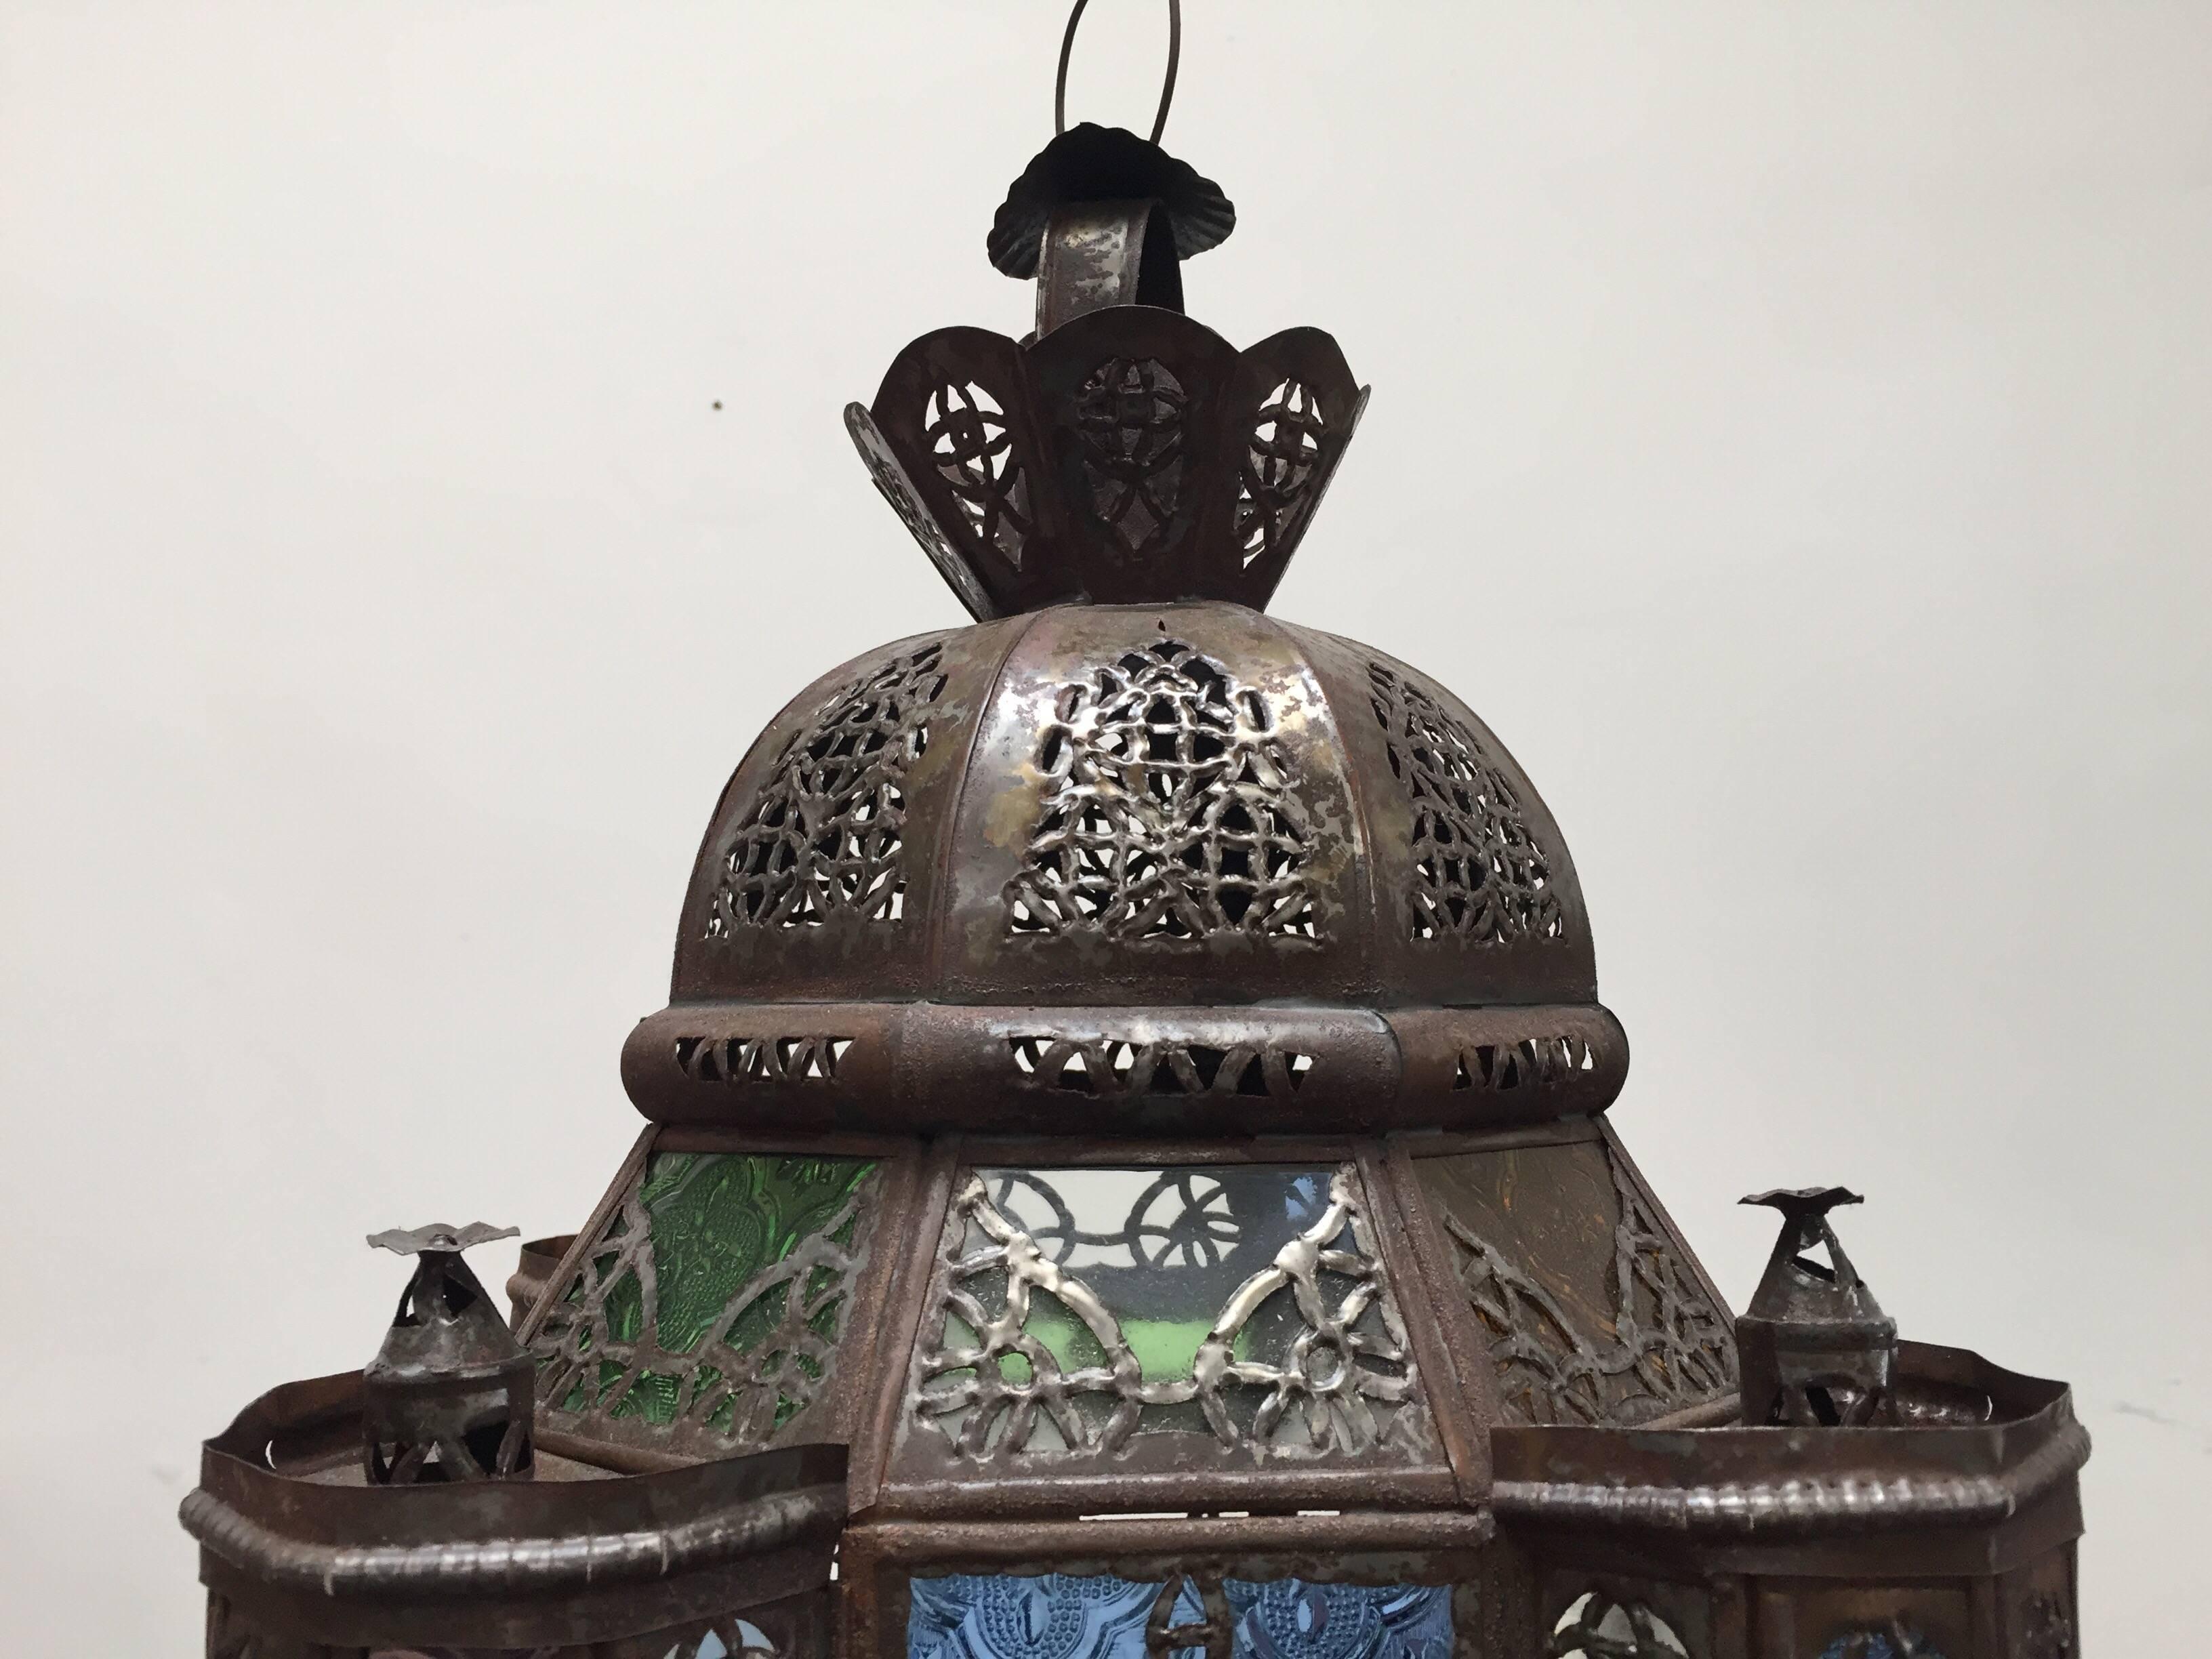 Pendentif en verre marocain fabriqué à la main avec du verre clair et coloré, de forme carrée avec des tours et un dôme avec filigrane métallique.
Cette lanterne marocaine en verre multicolore présente des arcs mauresques en filigrane métallique et